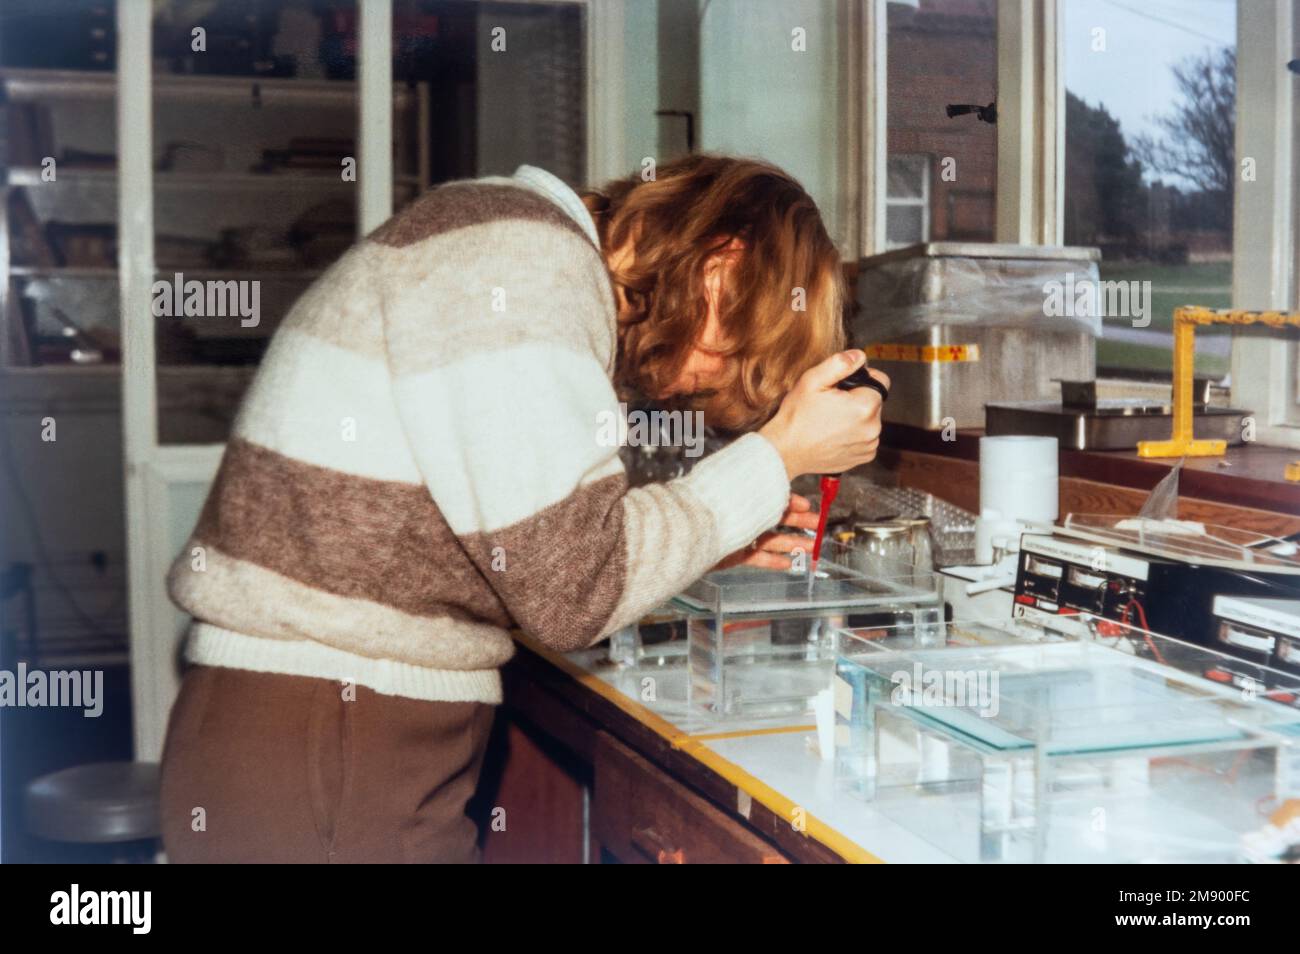 Scienziato che lavora in un laboratorio di biochimica caricando campioni di DNA su un gel di agarosio, foto di archivio da circa 1984, Inghilterra, Regno Unito Foto Stock